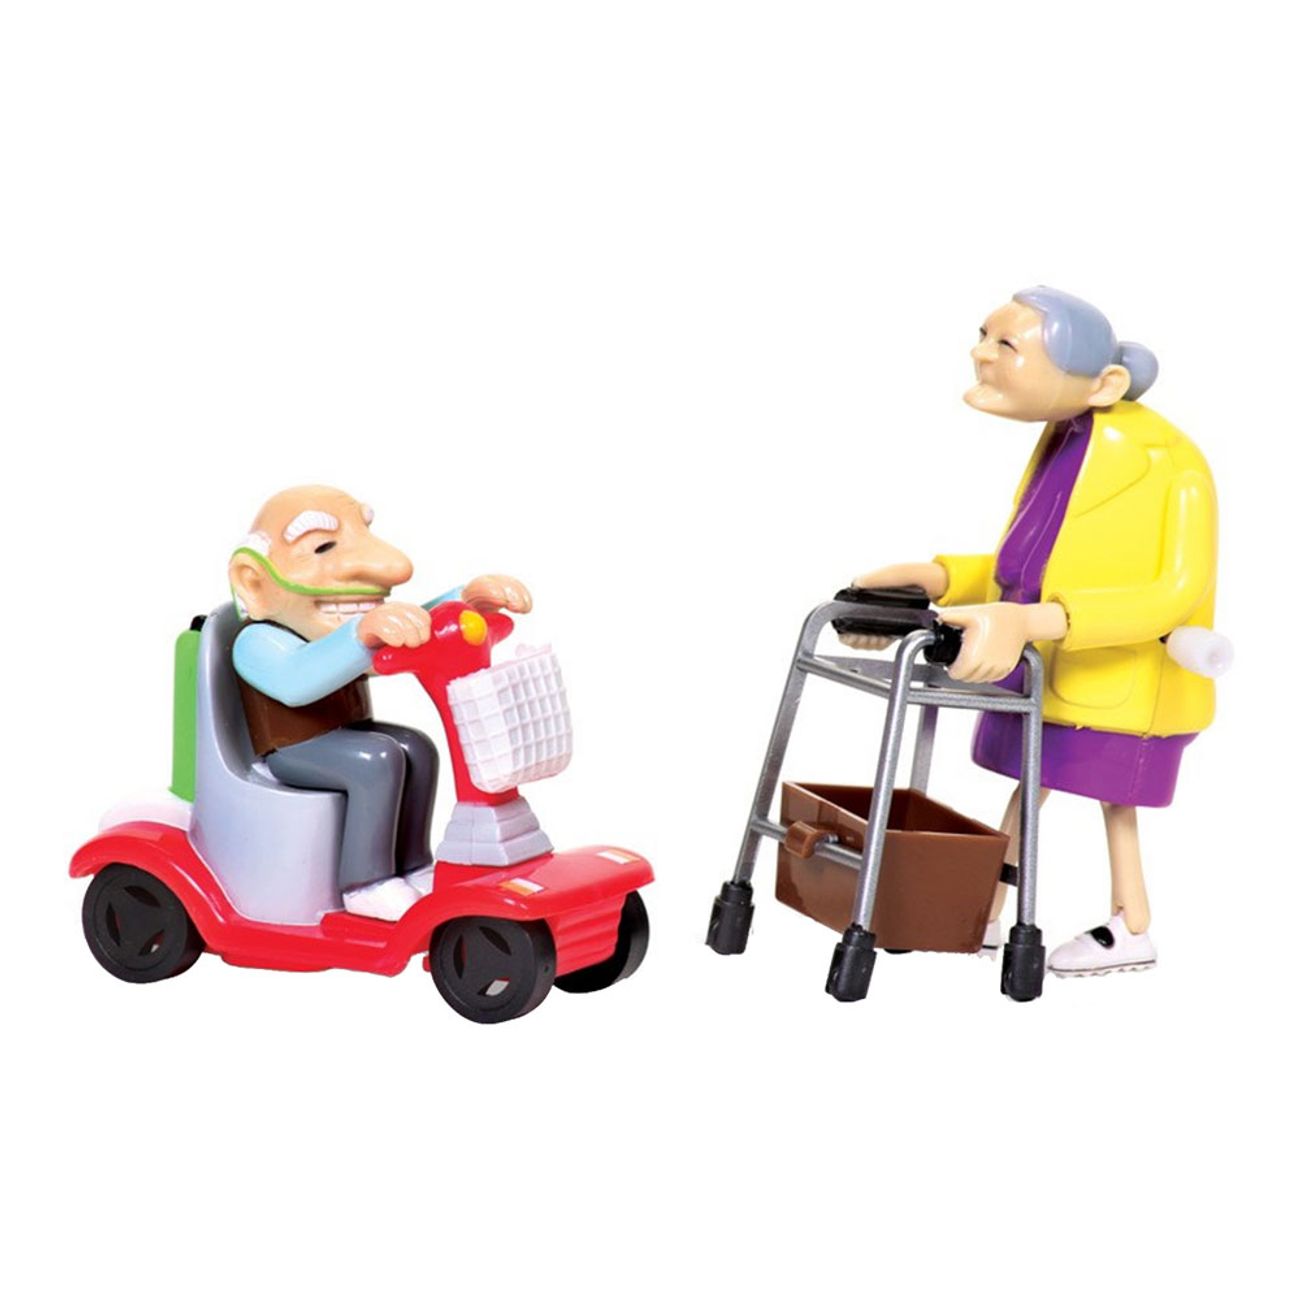 Racing Granny & Grandad main image